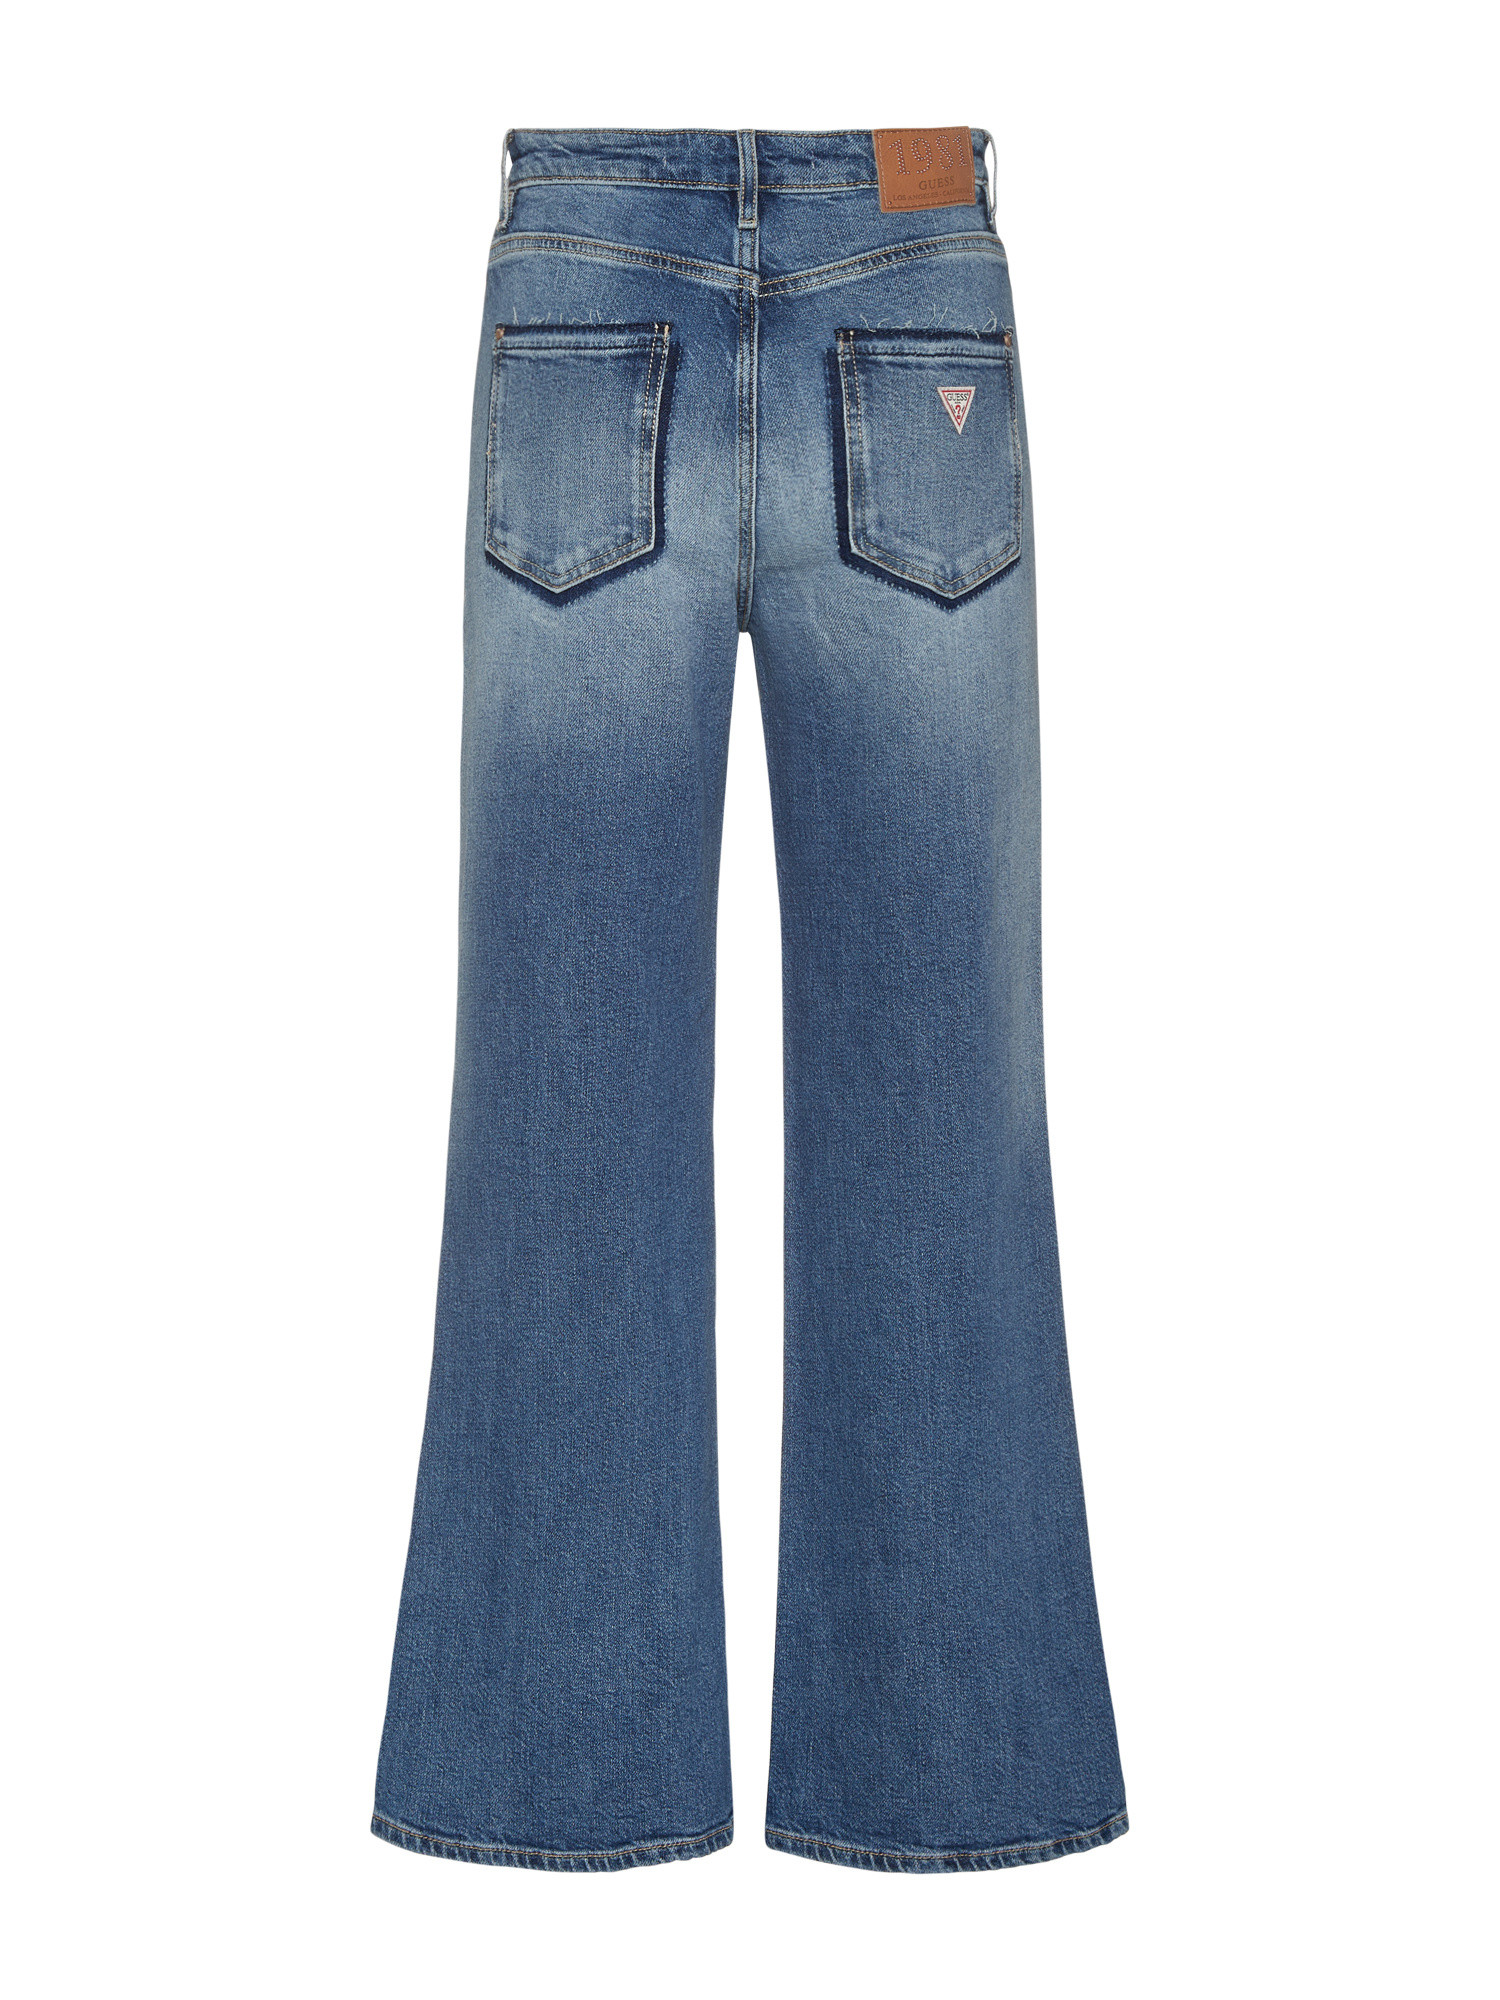 Guess - Five pocket wide leg jeans, Denim, large image number 1